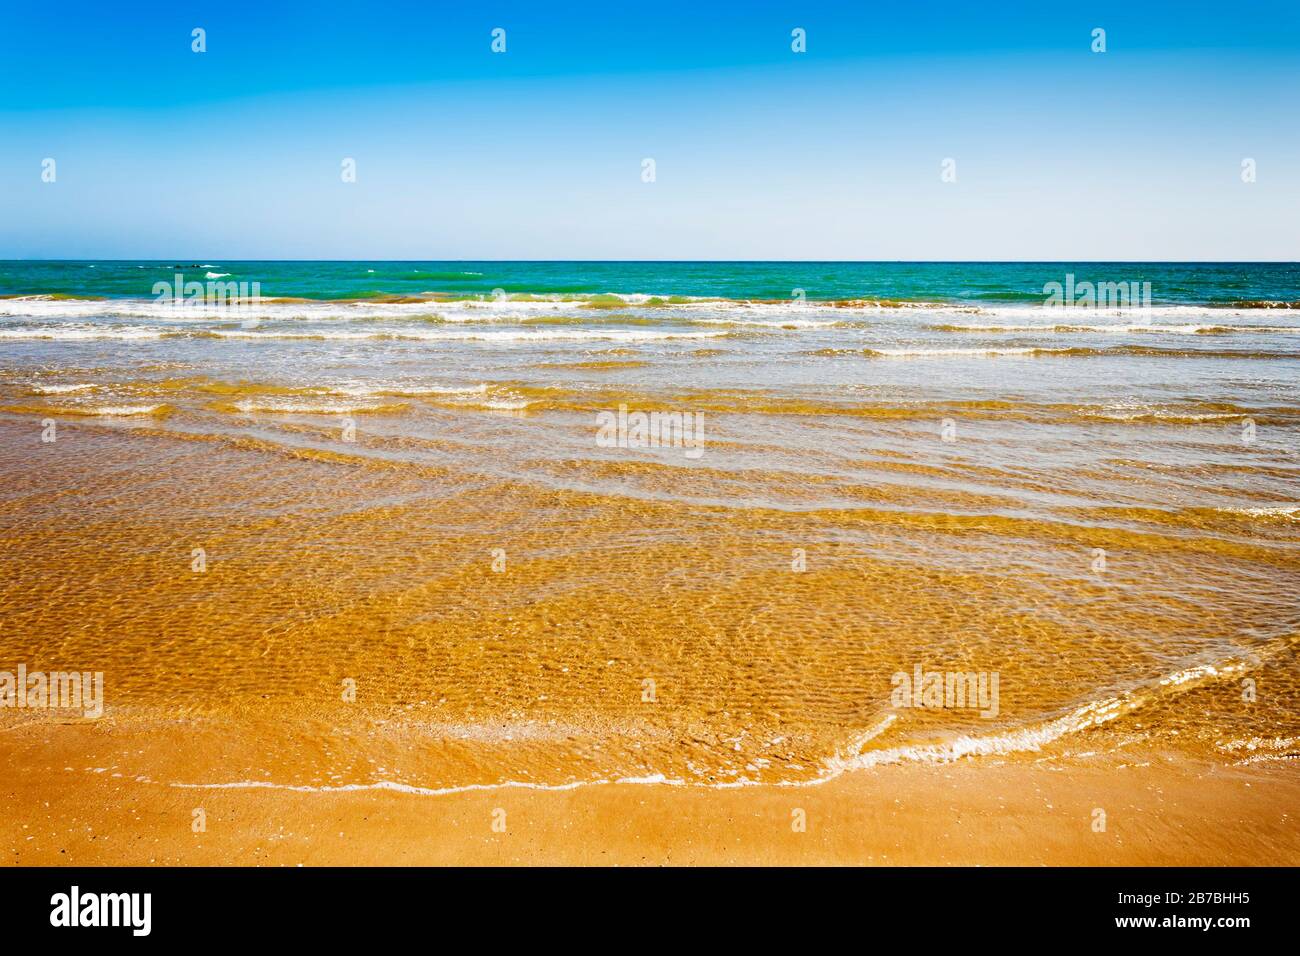 Sauberes Wasser, sandiger Strand, Sommerhintergrund. Sommerliche Ozeankulisse Stockfoto